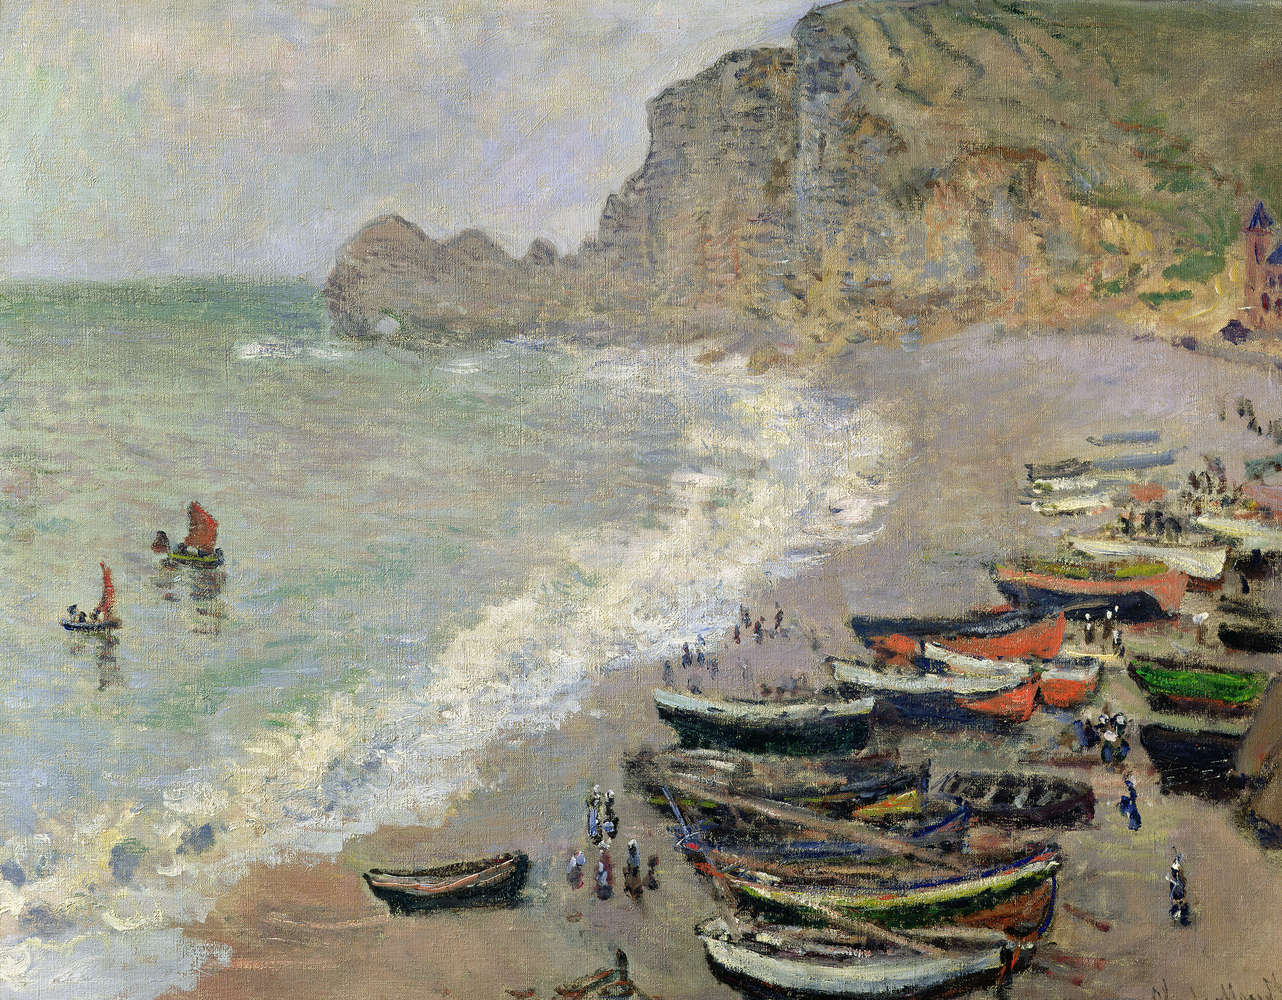             Muurschildering "Etretat, strand en de Porte d'Amont" van Claude Monet
        